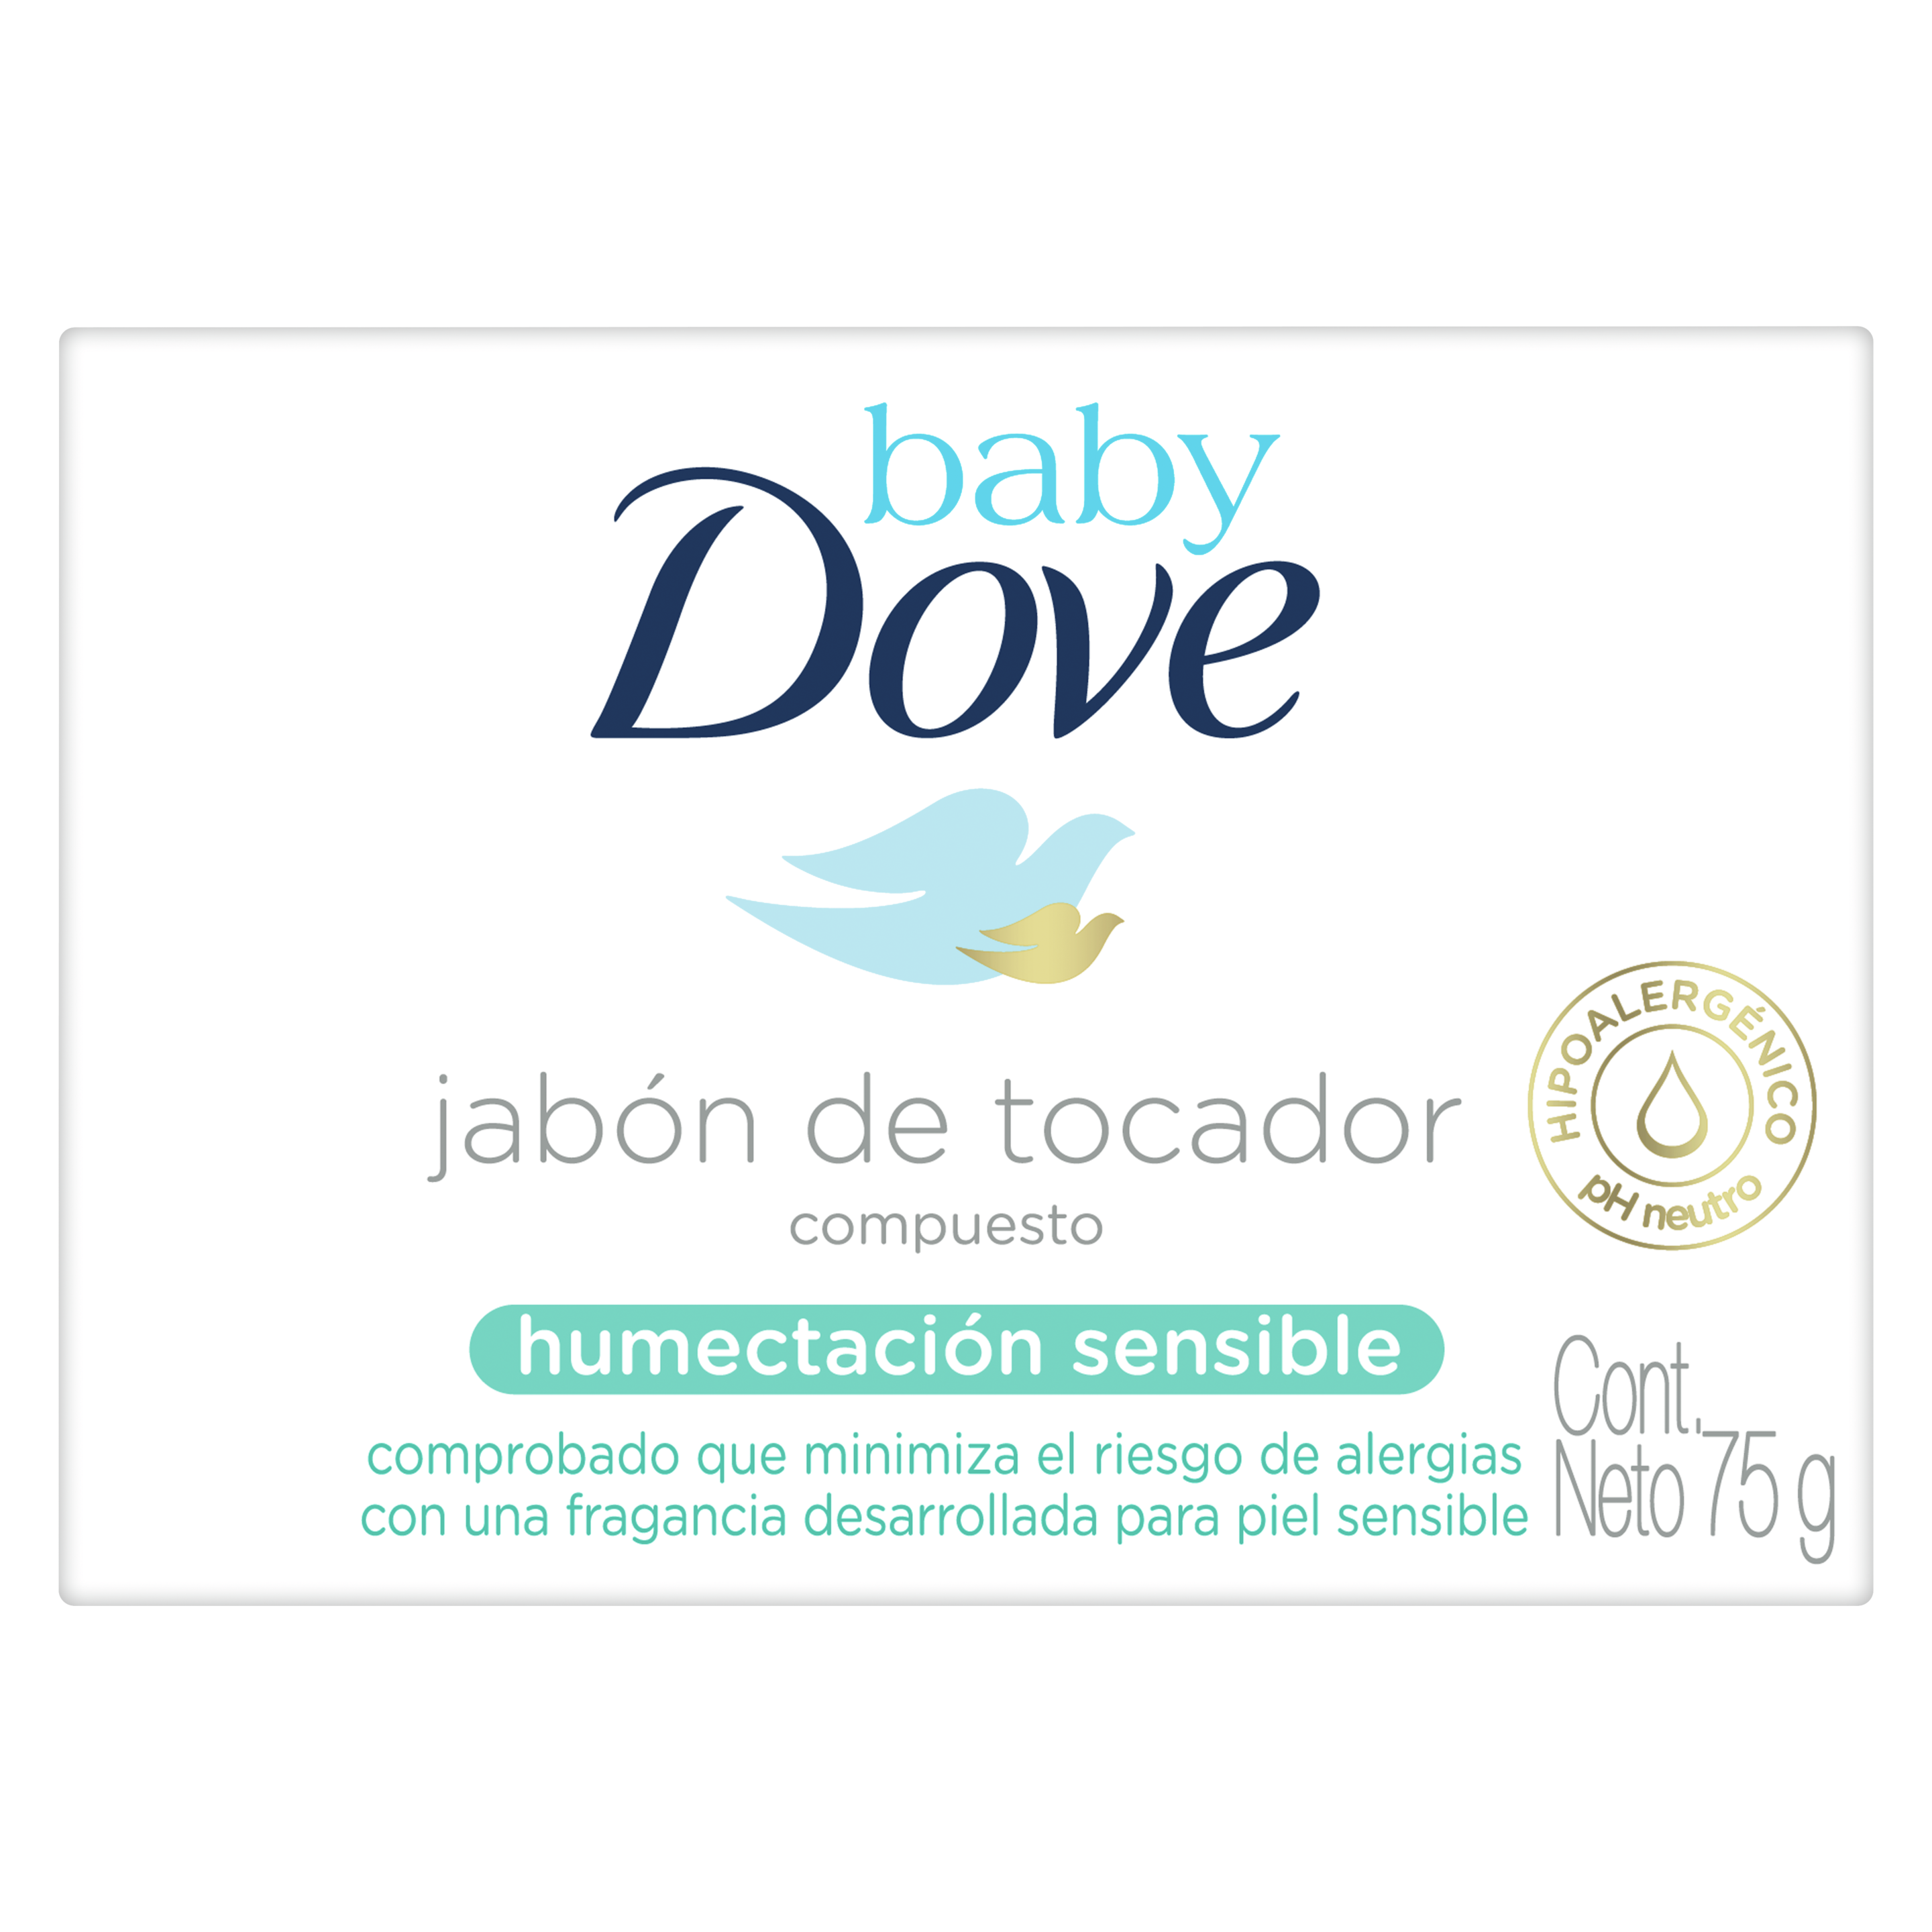 Baby Dove jabón de tocador compuesto. Humectación sensible.